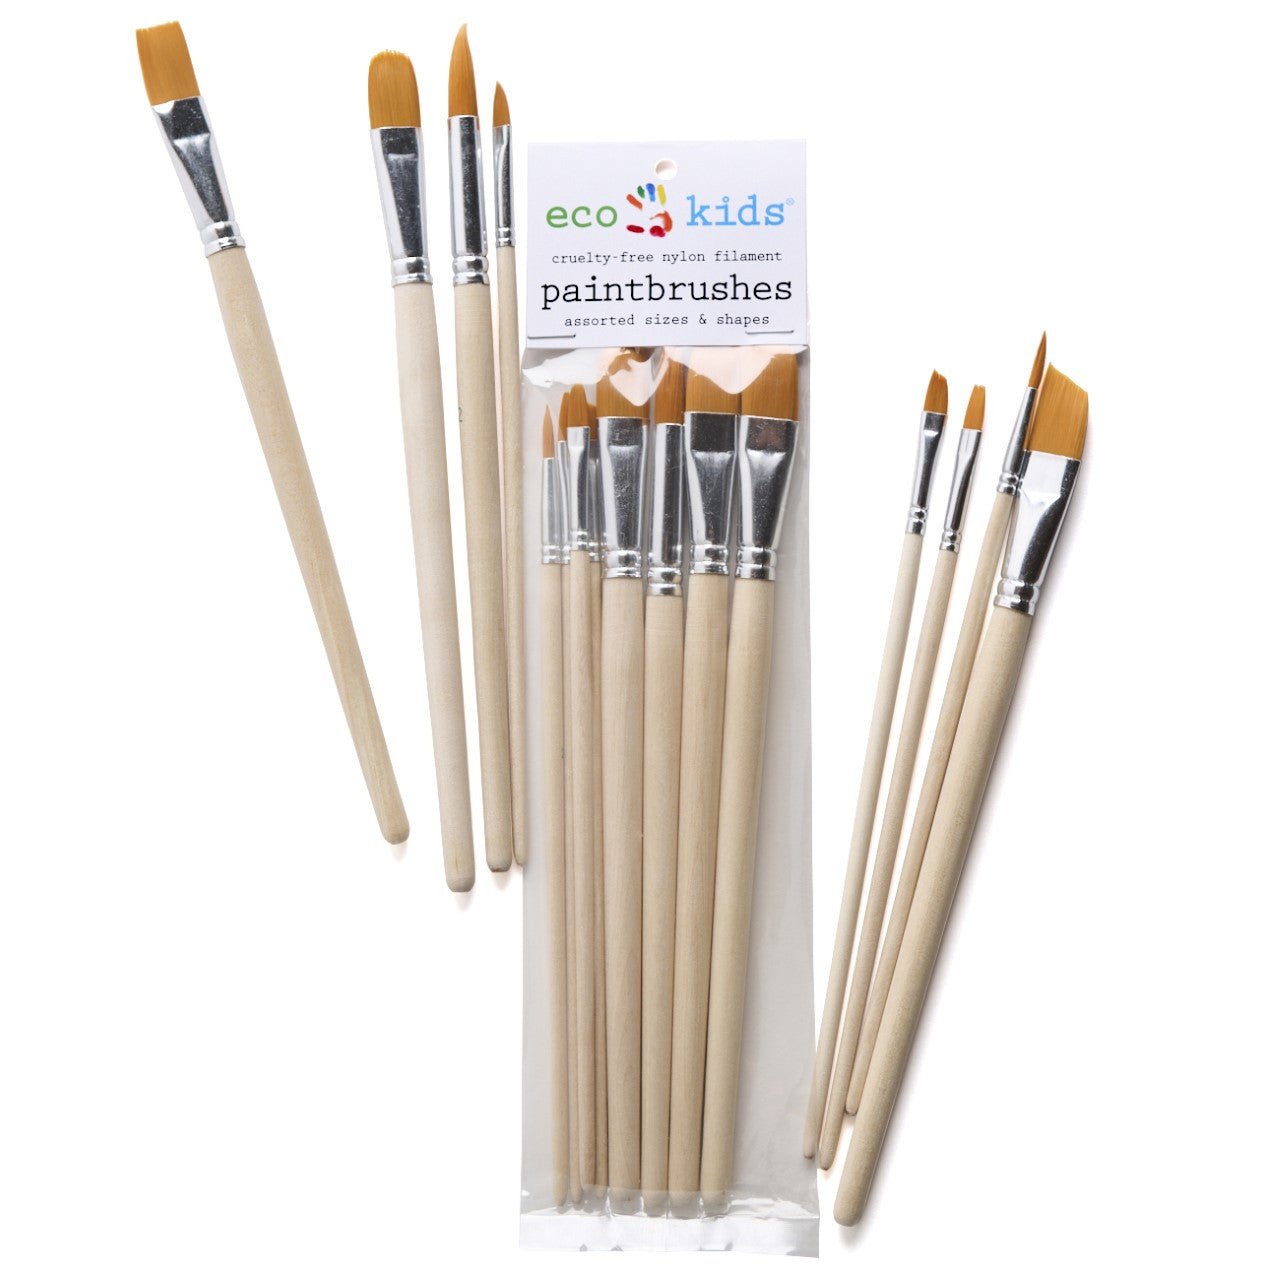 cruelty free paint brushes 3